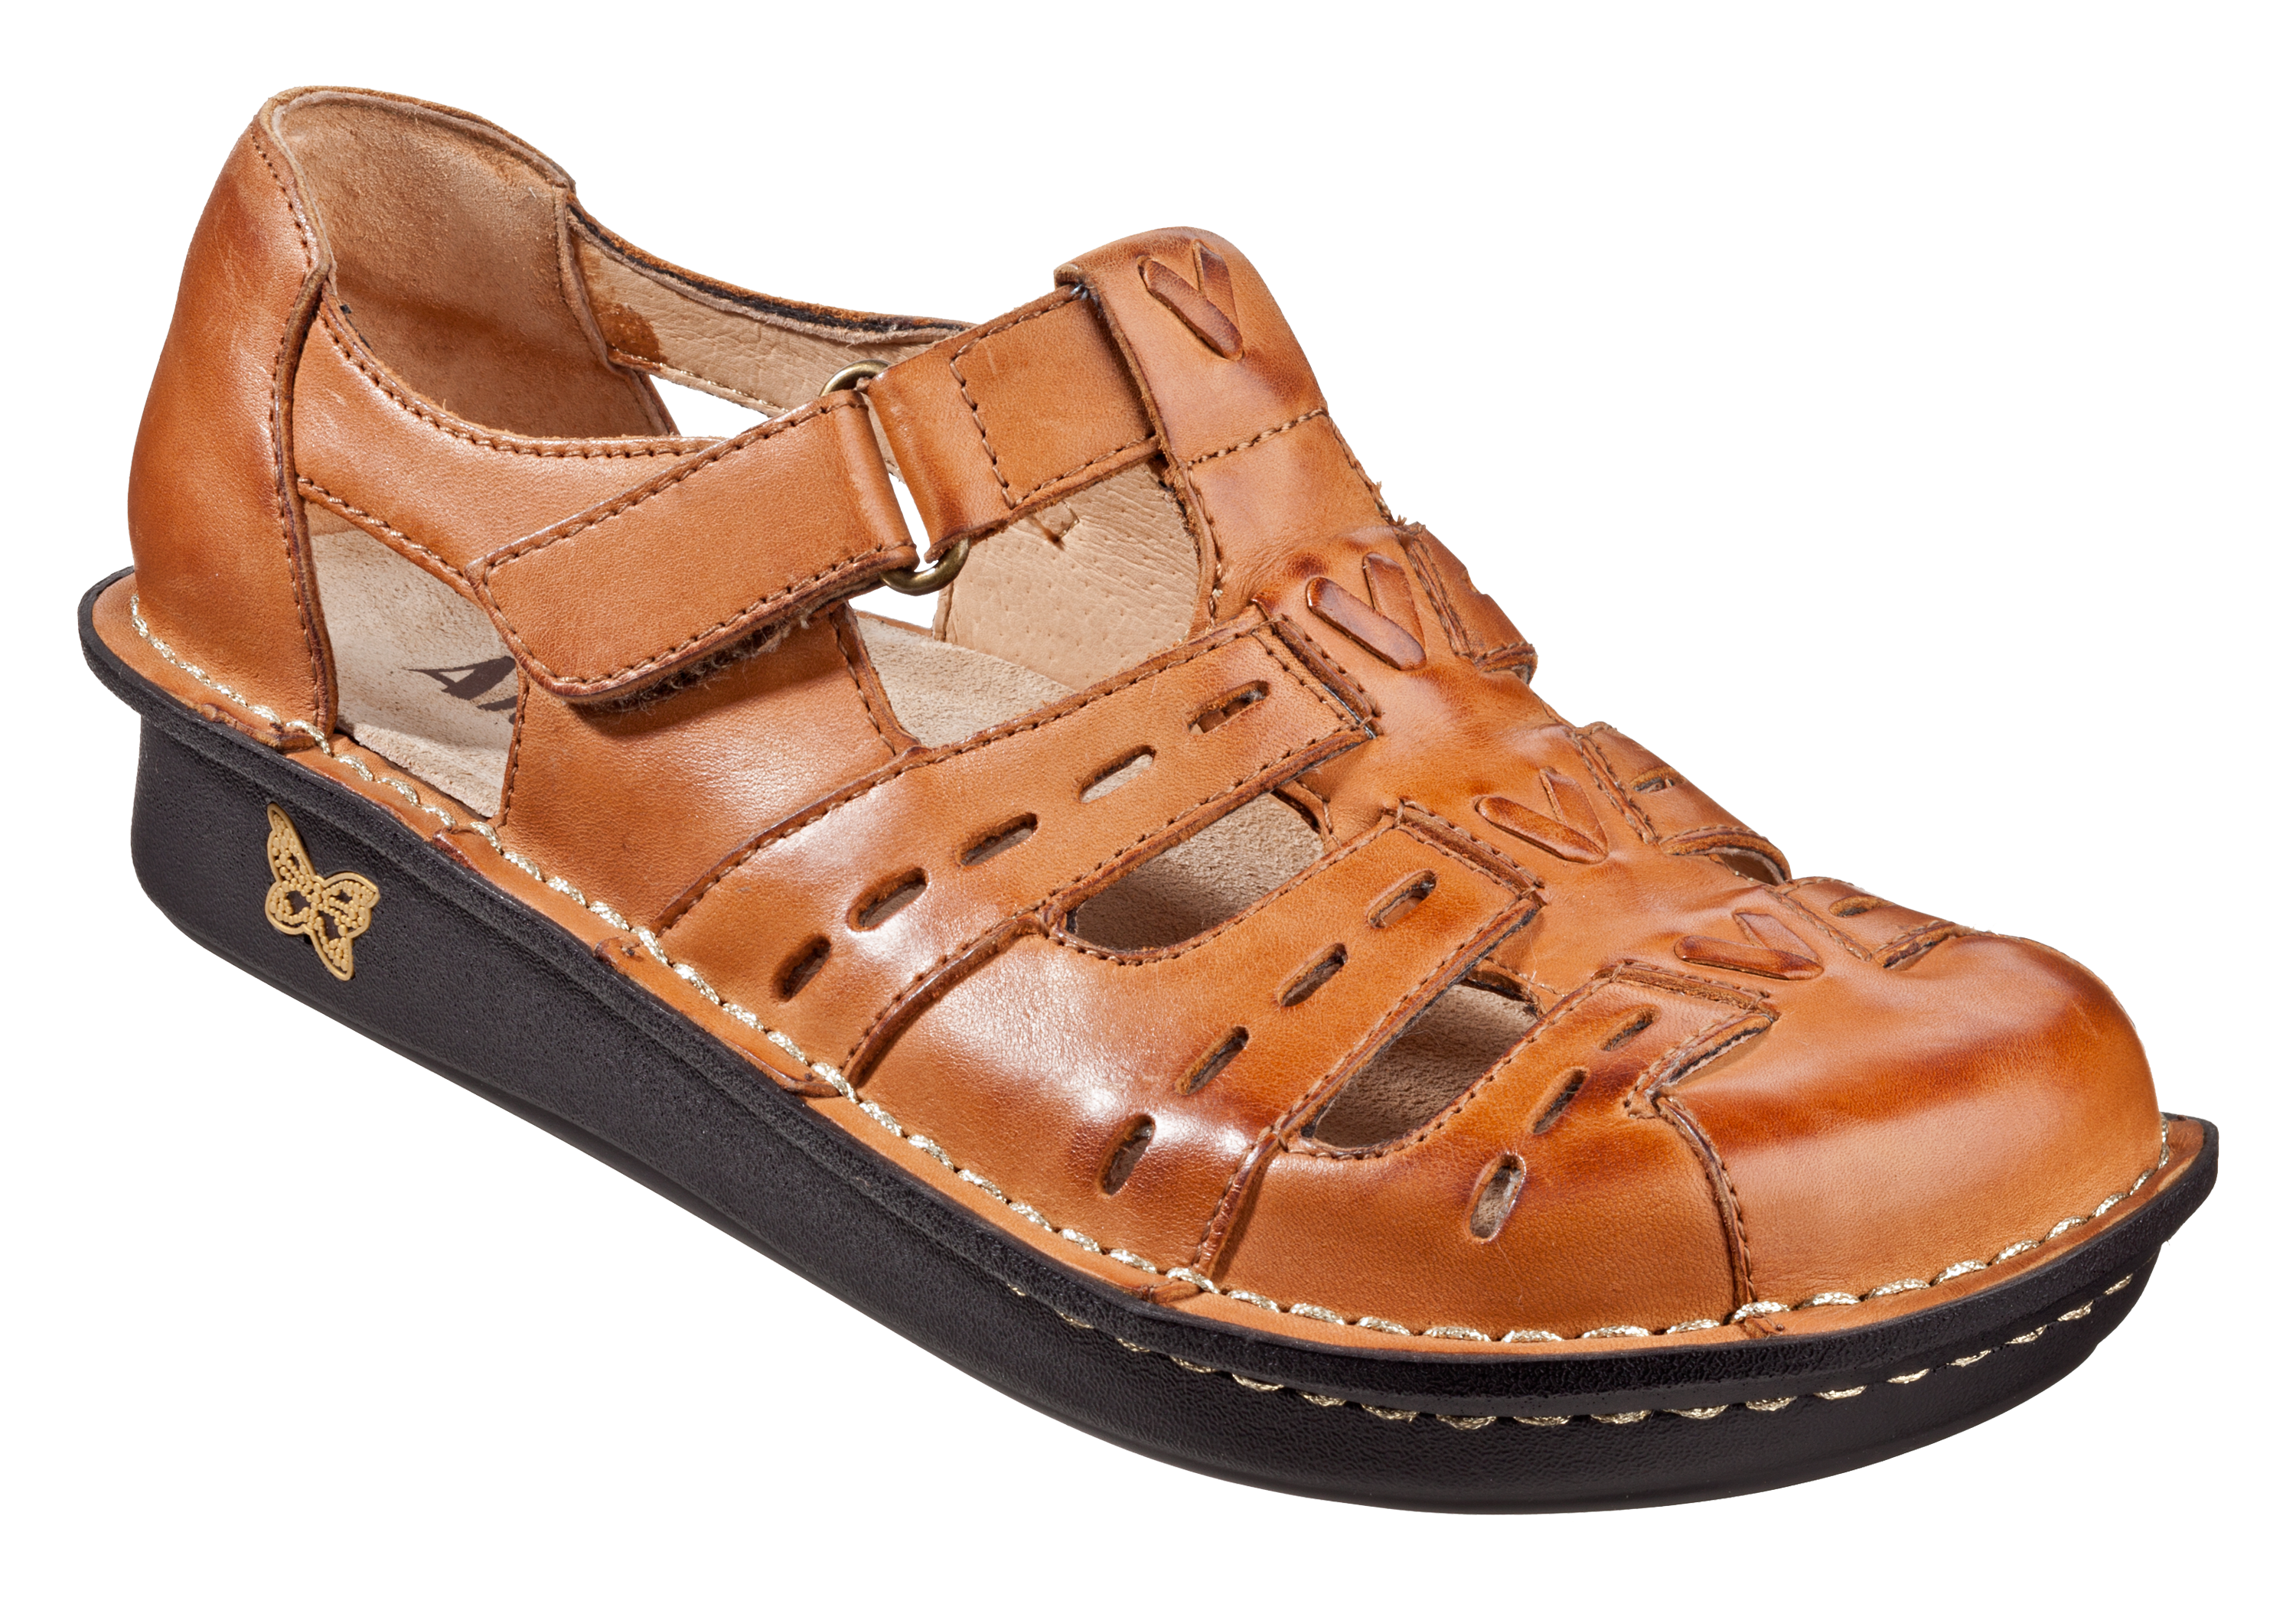 Alegria Pesca Sandals for Ladies